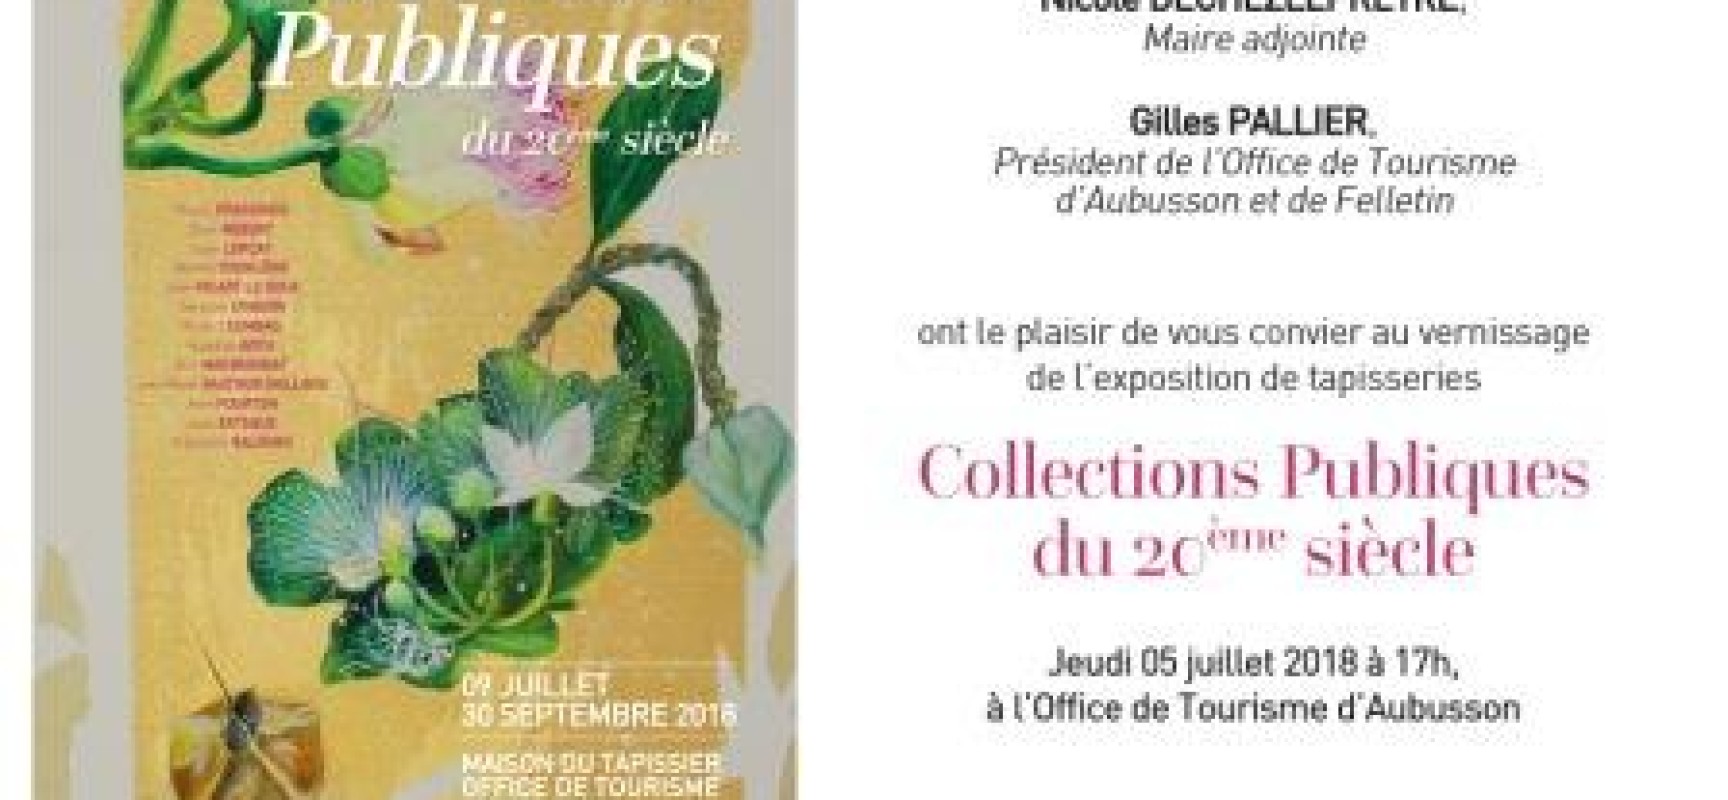 Vernissage exposition « Collections publiques du 20ème siècle » JEUDI 5 JUILLET à 17h #Aubusson